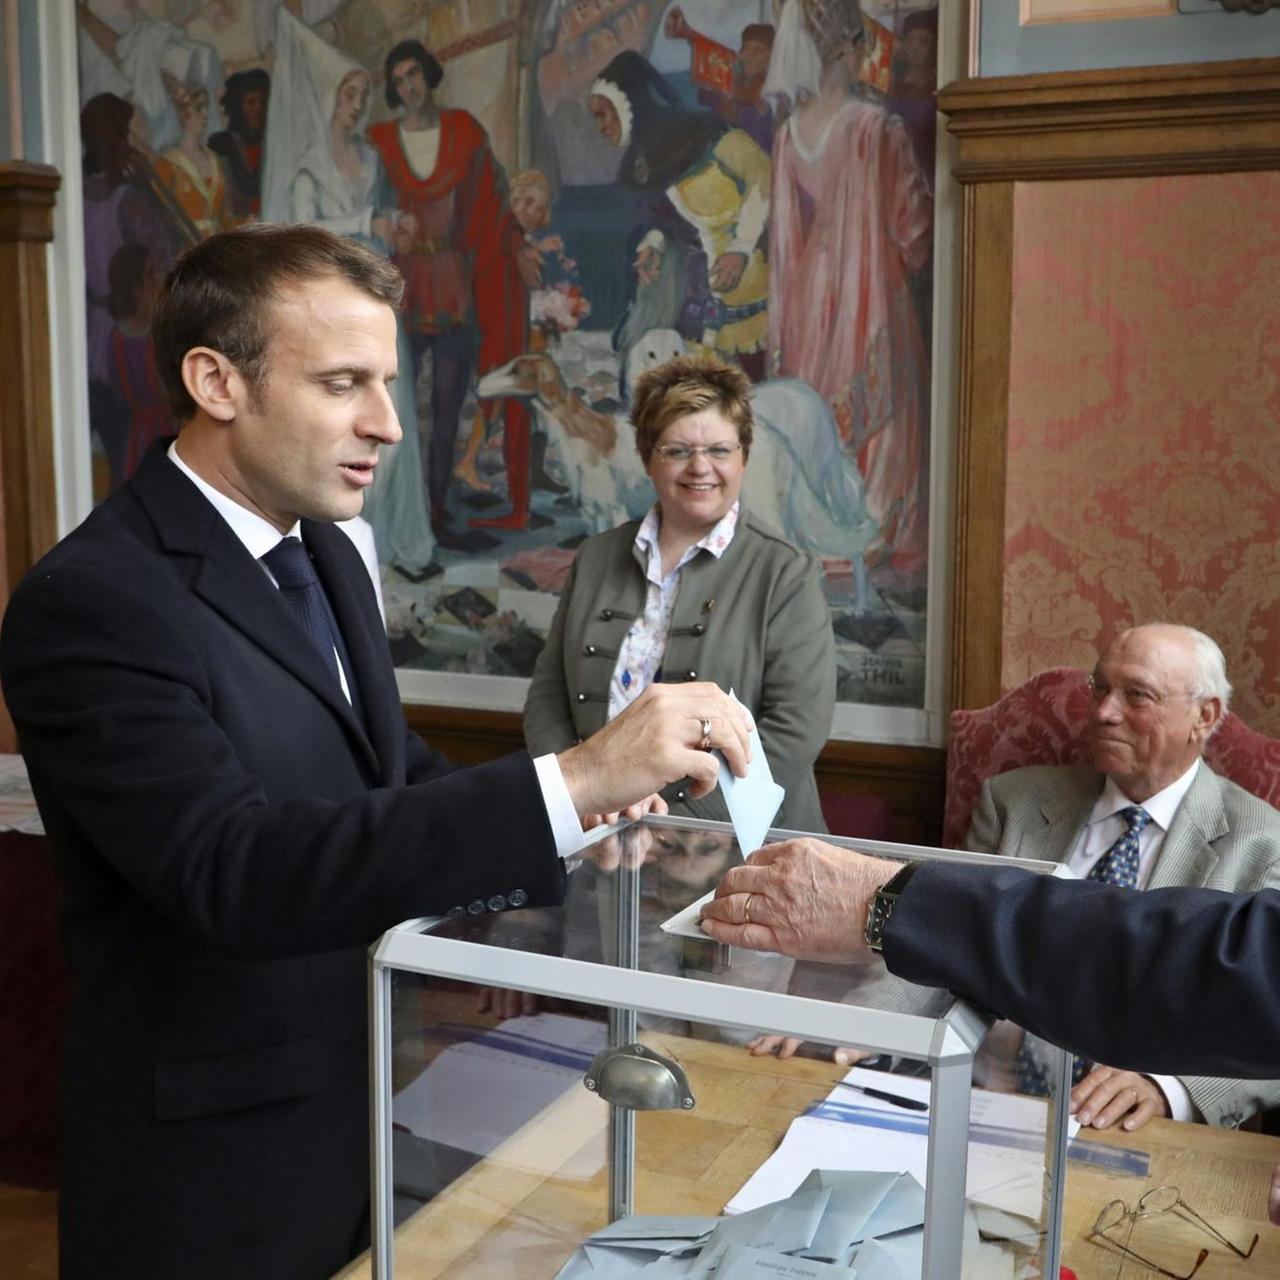 Emmanuel Macron steckt den verschlossenen Umschlag mit seinem Wahlzettel in eine transparente Wahlurne. Auf der anderen Seite kontrolliert ein Wahlhelfer ven Vorgang. 